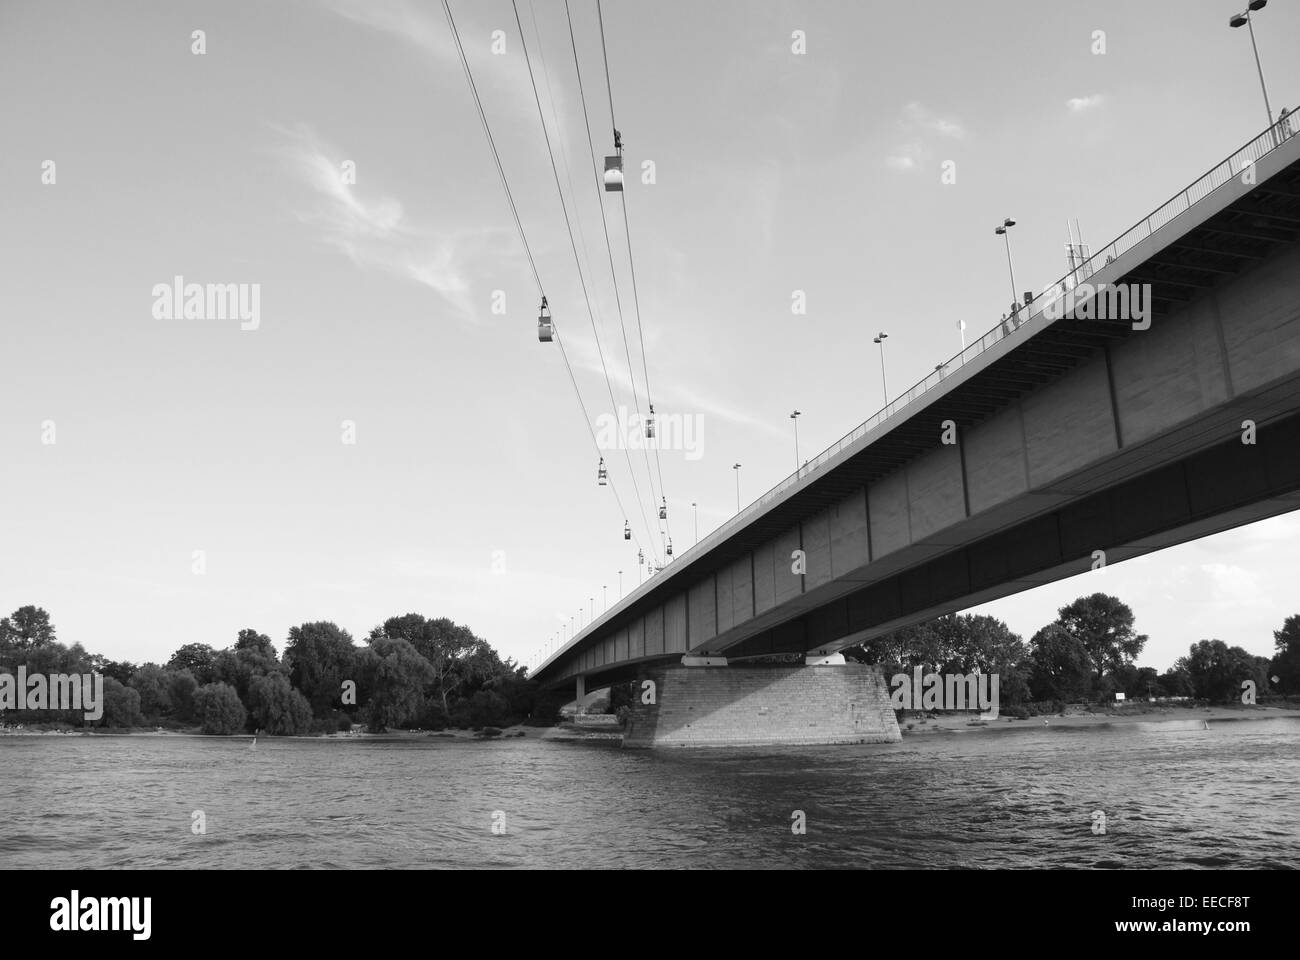 Seilbahnen überqueren den Rhein mit der Zoobruecke (Zoobrücke) in Köln - monochrome Verarbeitung Stockfoto